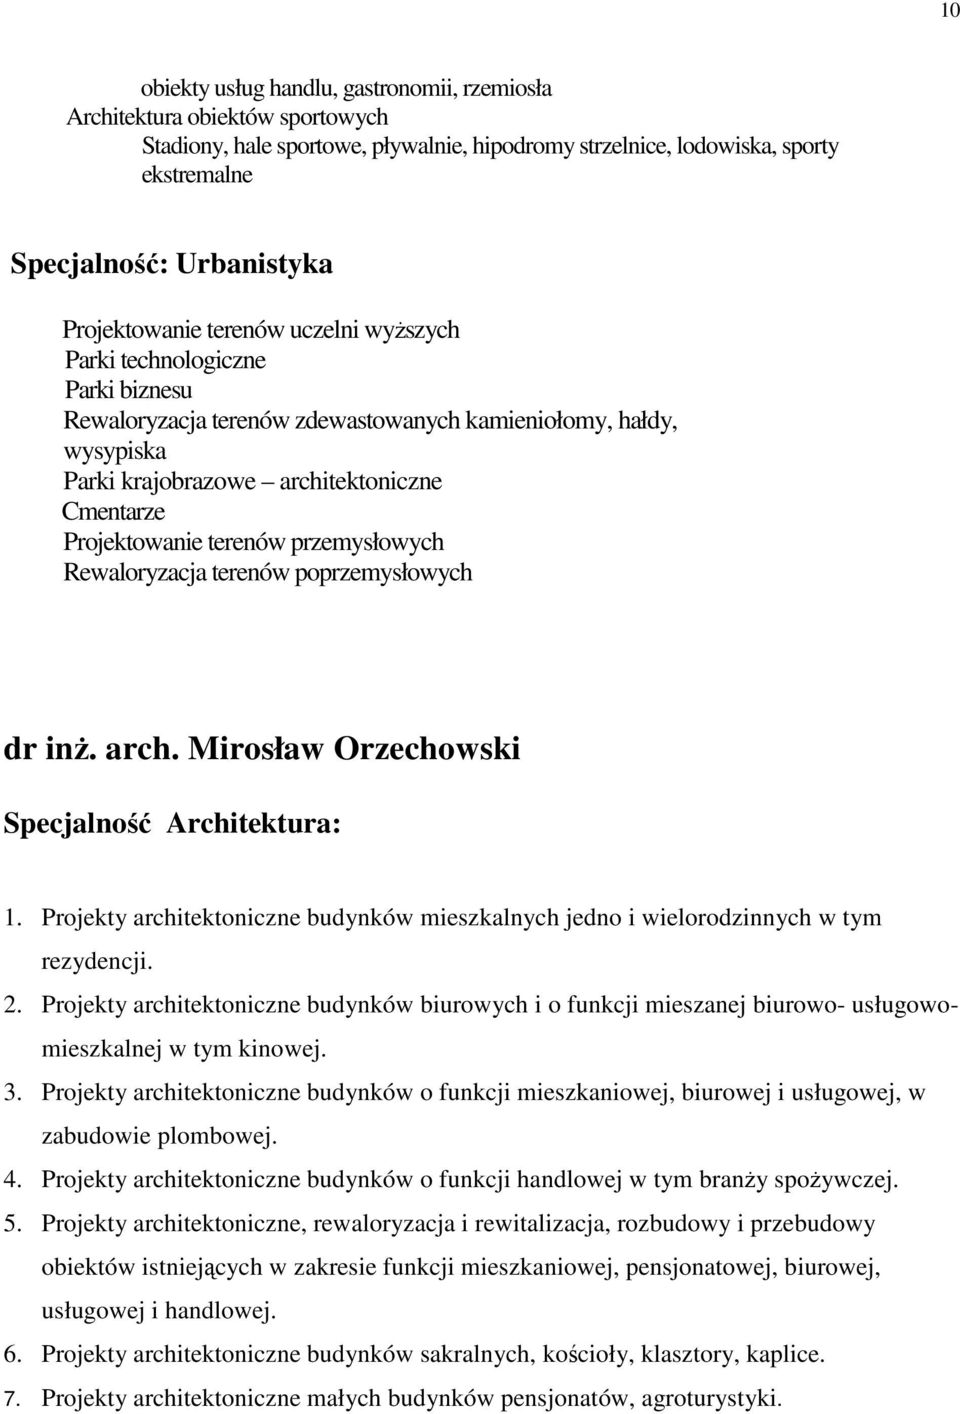 Rewaloryzacja terenów poprzemysłowych dr inŝ. arch. Mirosław Orzechowski 1. Projekty architektoniczne budynków mieszkalnych jedno i wielorodzinnych w tym rezydencji. 2.